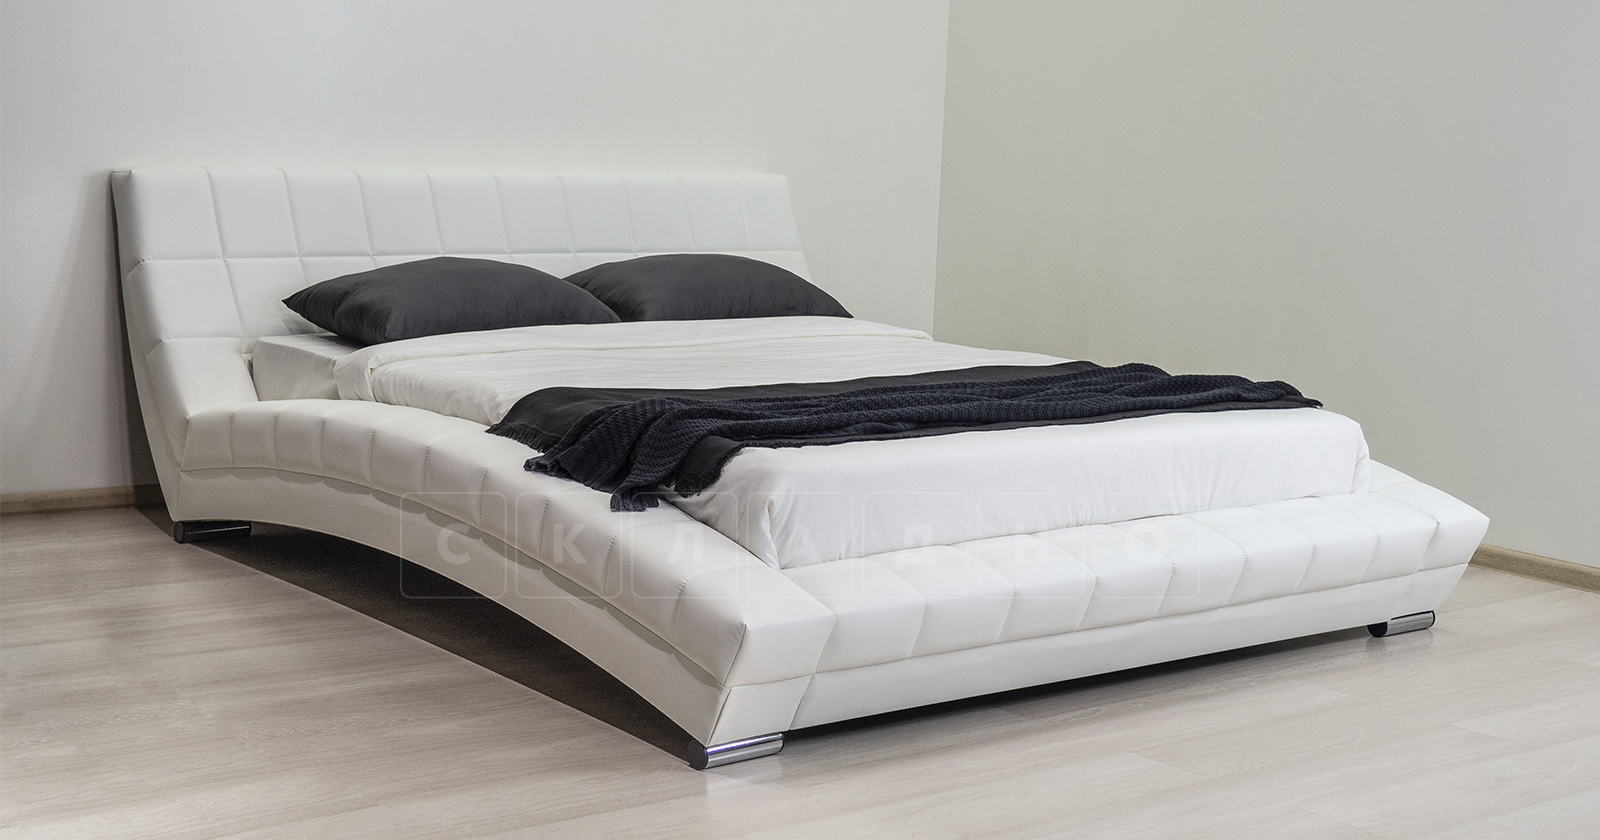 Мягкая кровать Оливия 160 см экокожа белый фото 10 | интернет-магазин Складно